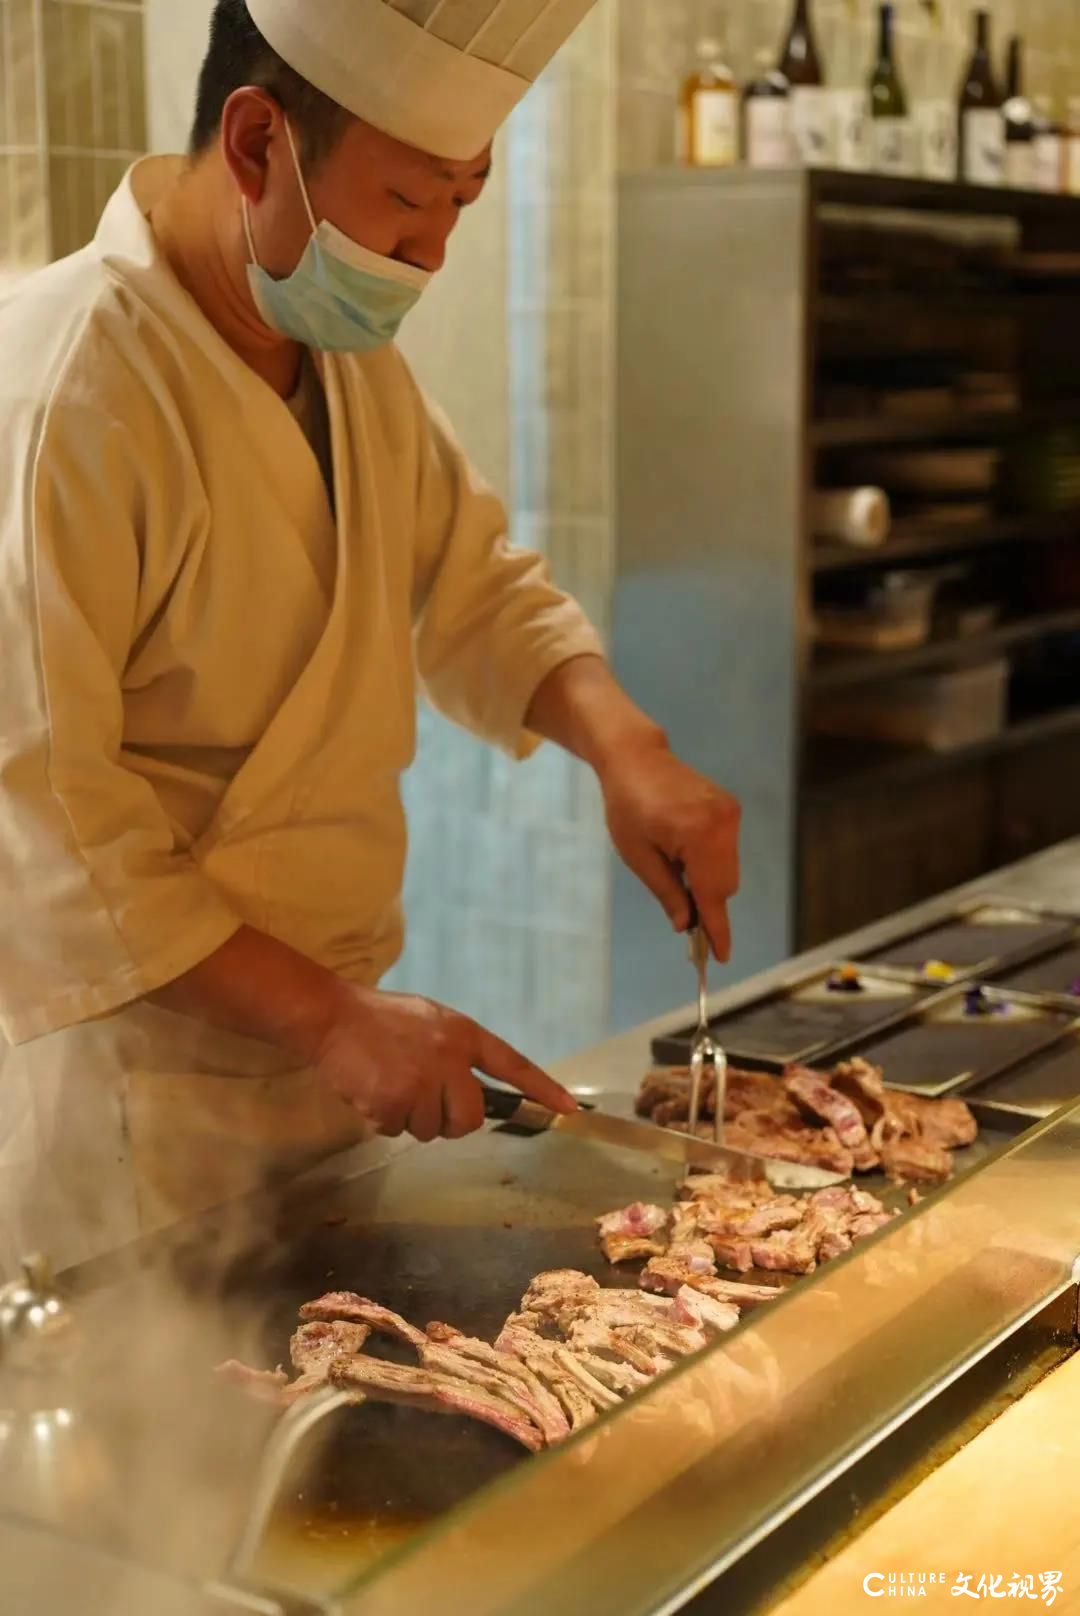 “新年宴请”来济南泉客厅·和彩板前料理，感受日本主厨鱼住洋介精心指导制作的冬季新品